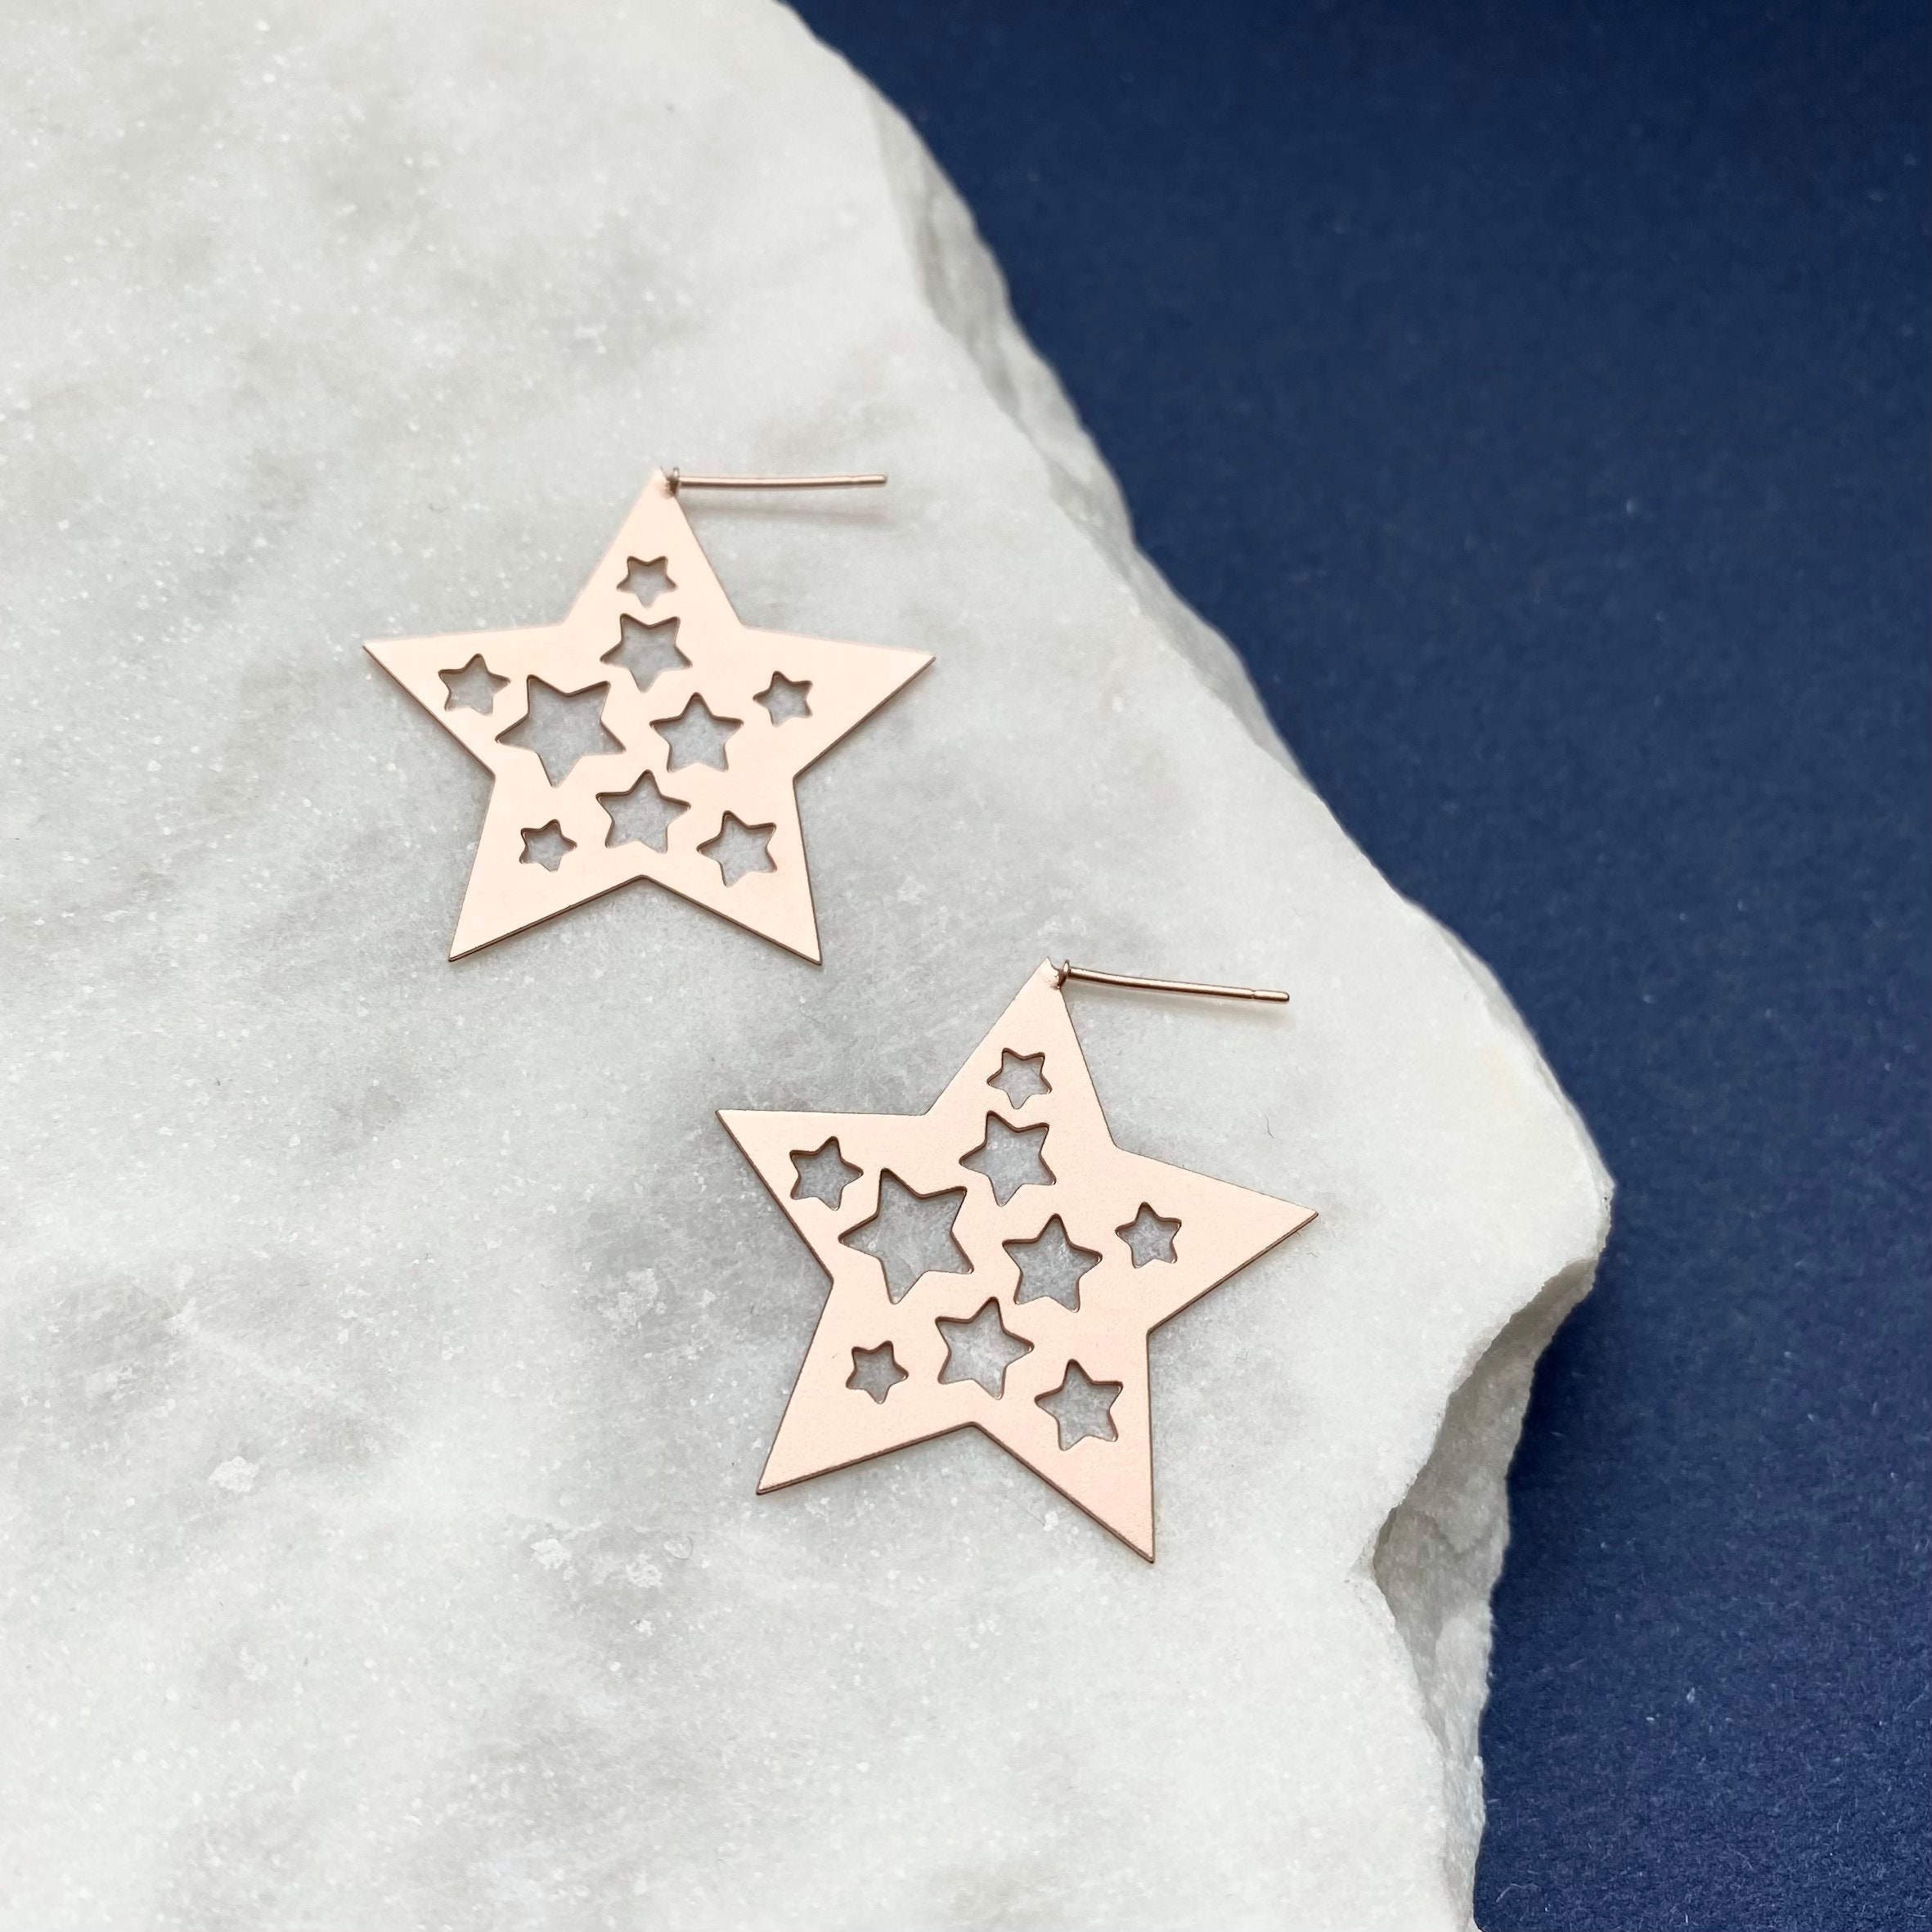 Star Stud Earrings - Rose Gold Celestial Festive Party